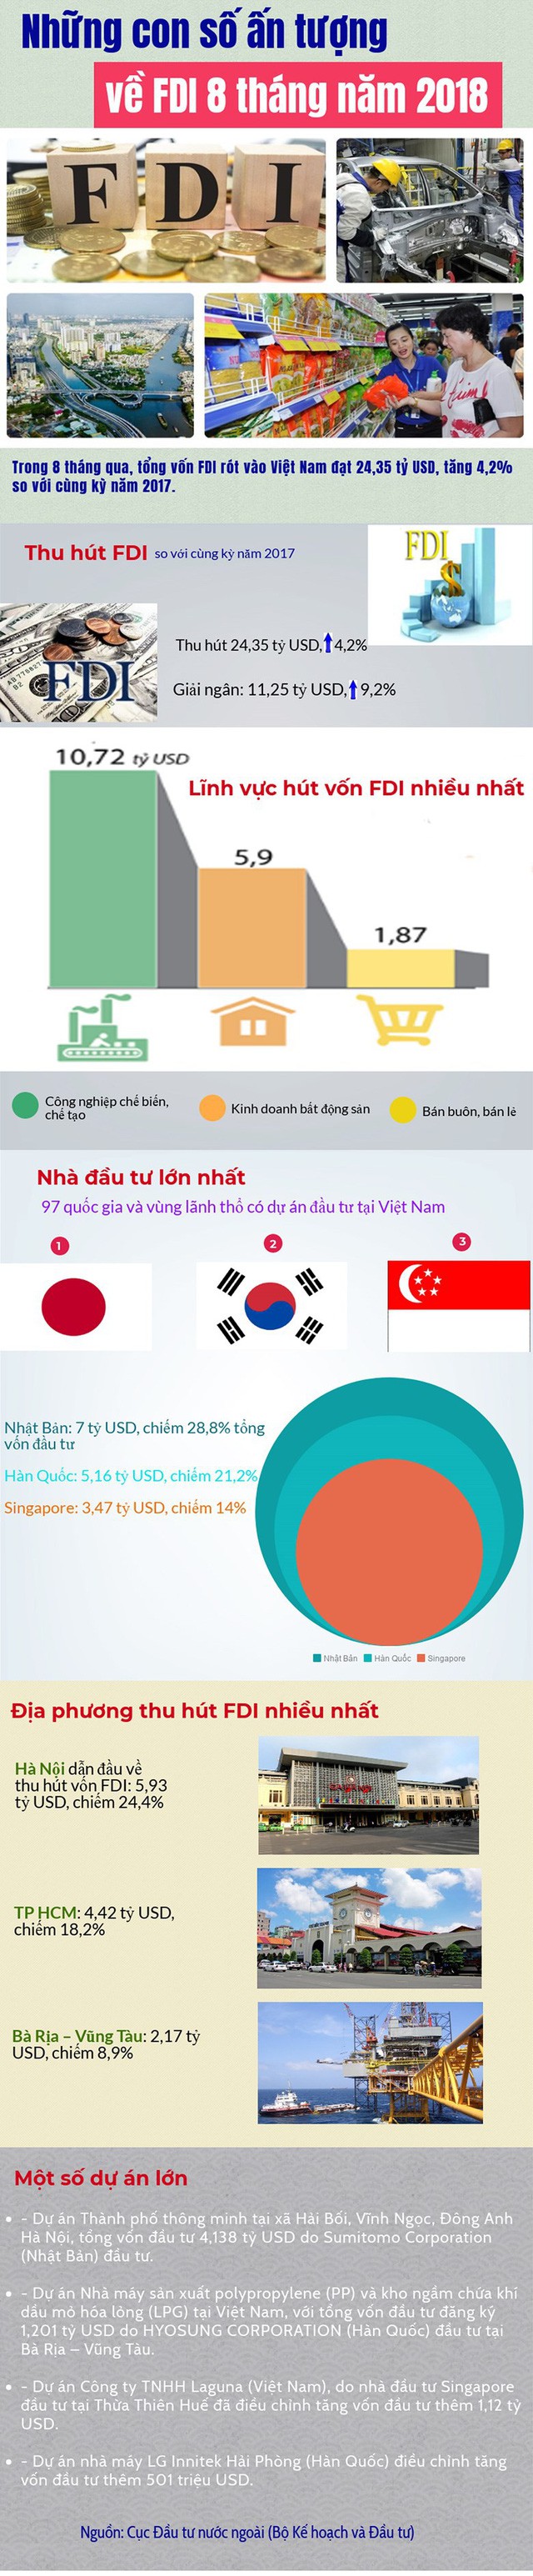  Infographics: Những con số ấn tượng về FDI 8 tháng năm 2018 - Ảnh 1.